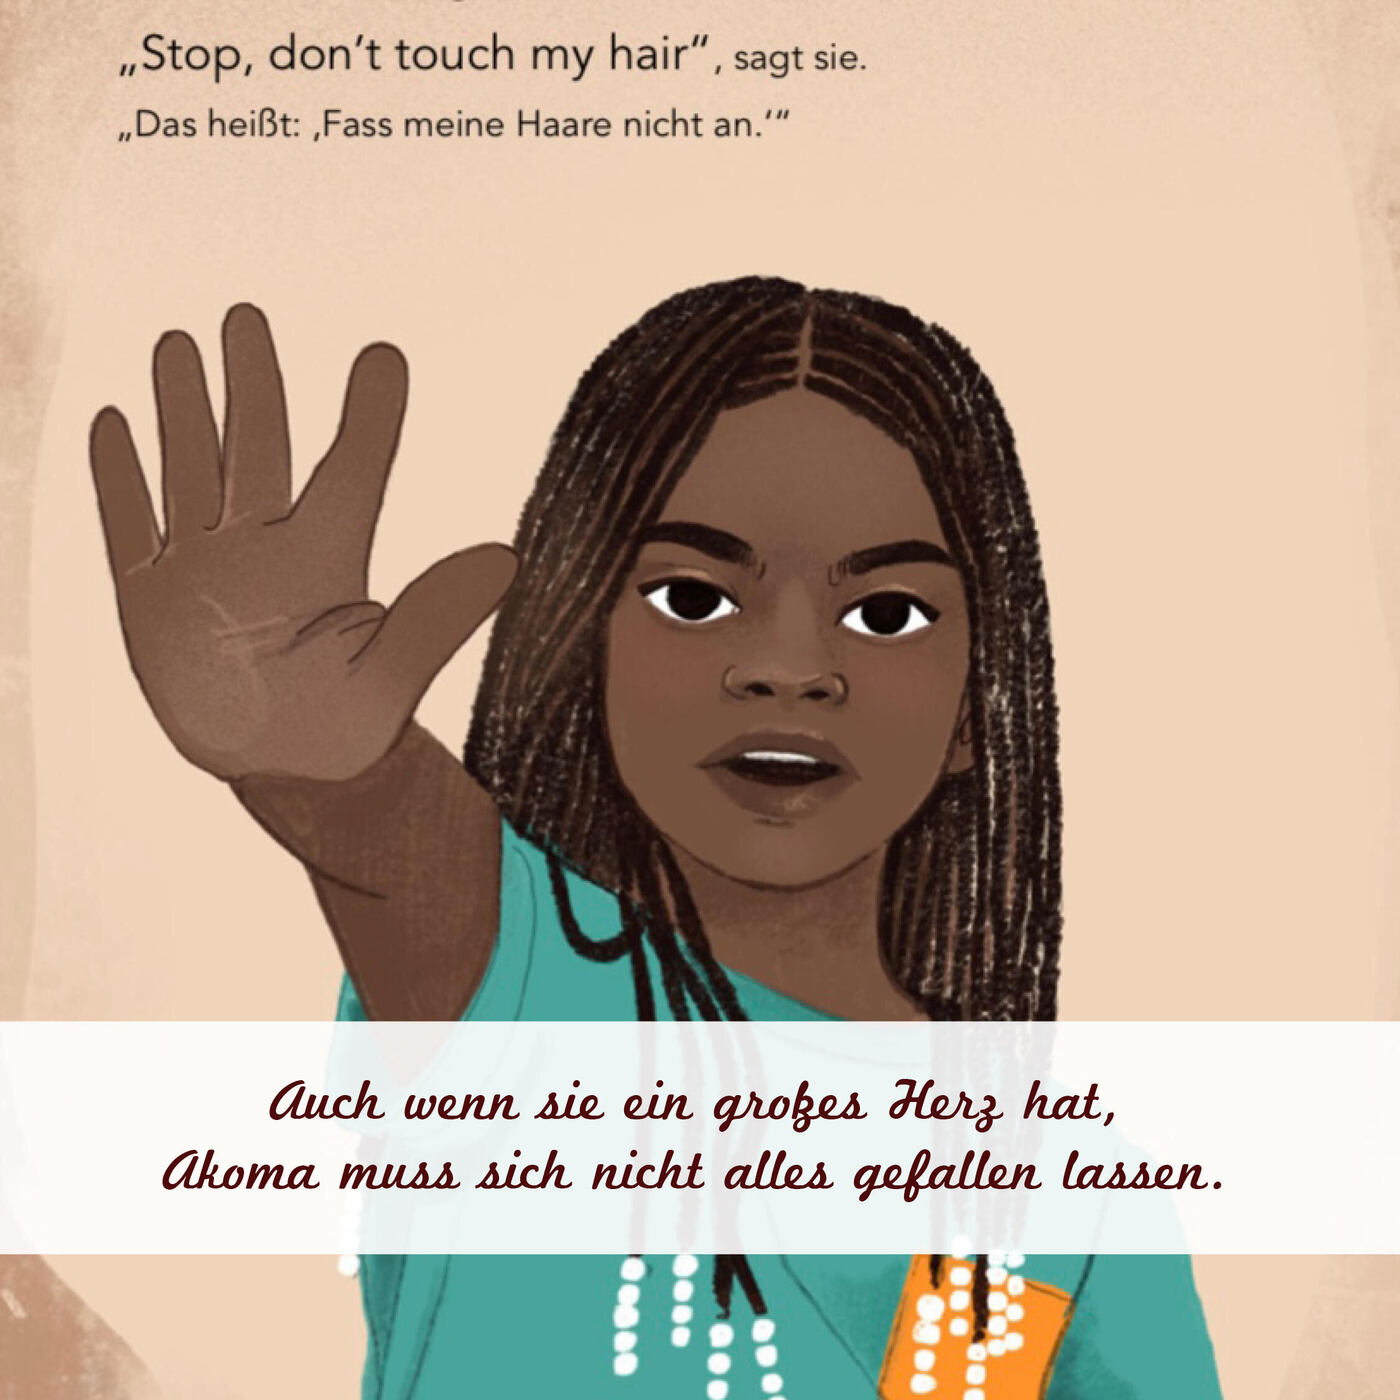 Die Illustration von einem schwarzen Mädchen, was einen Arm und die Hand nach vorne streckt. 